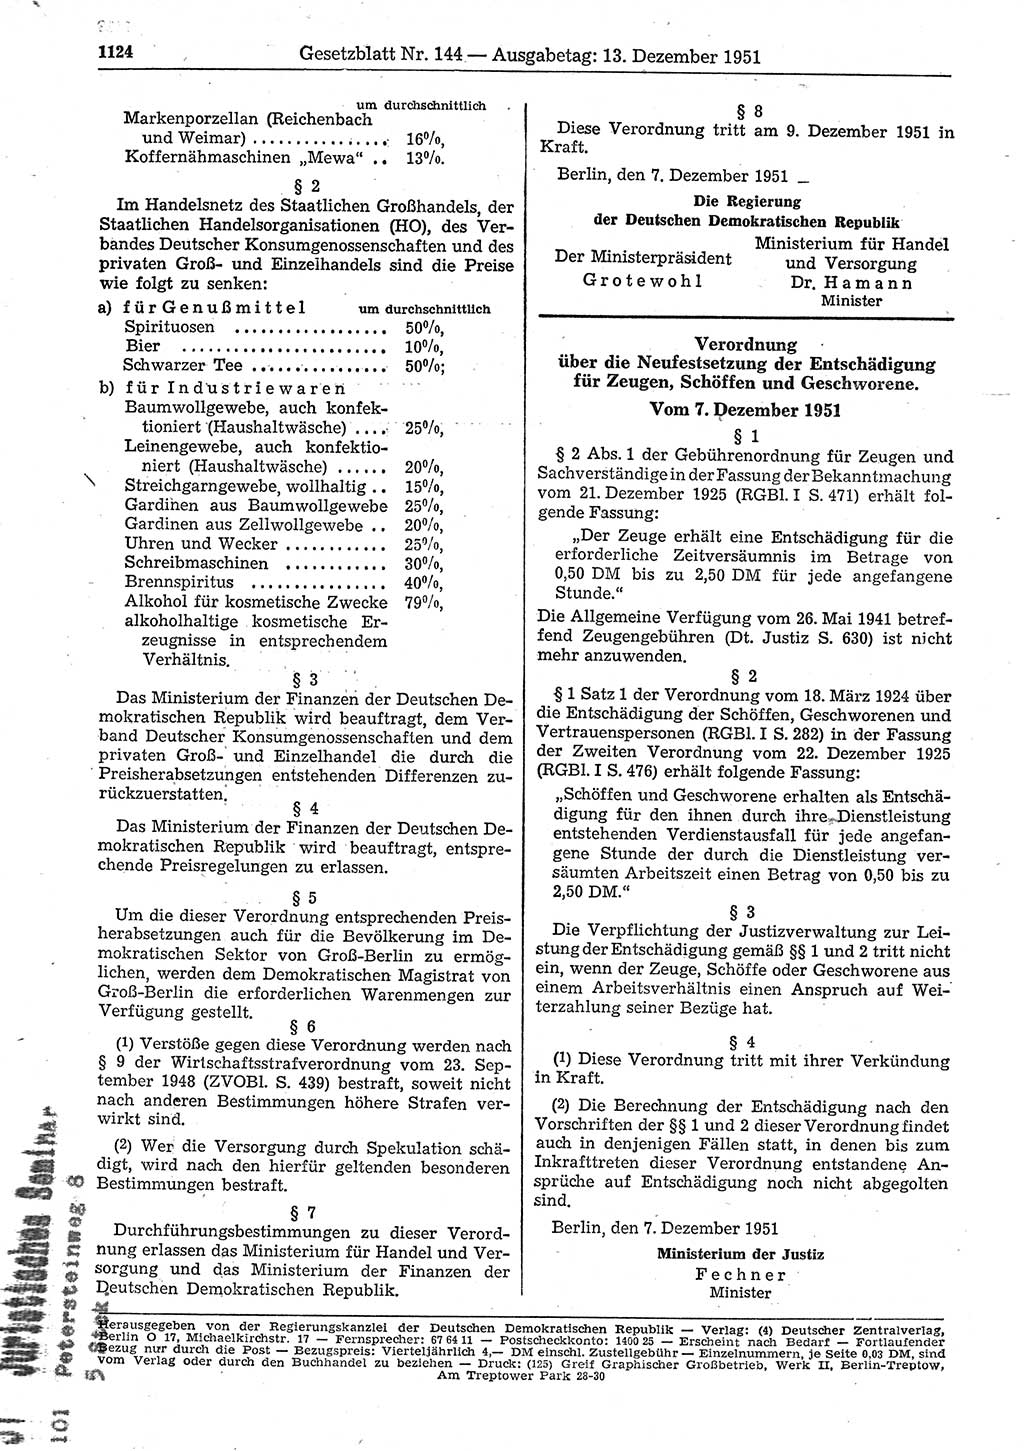 Gesetzblatt (GBl.) der Deutschen Demokratischen Republik (DDR) 1951, Seite 1124 (GBl. DDR 1951, S. 1124)